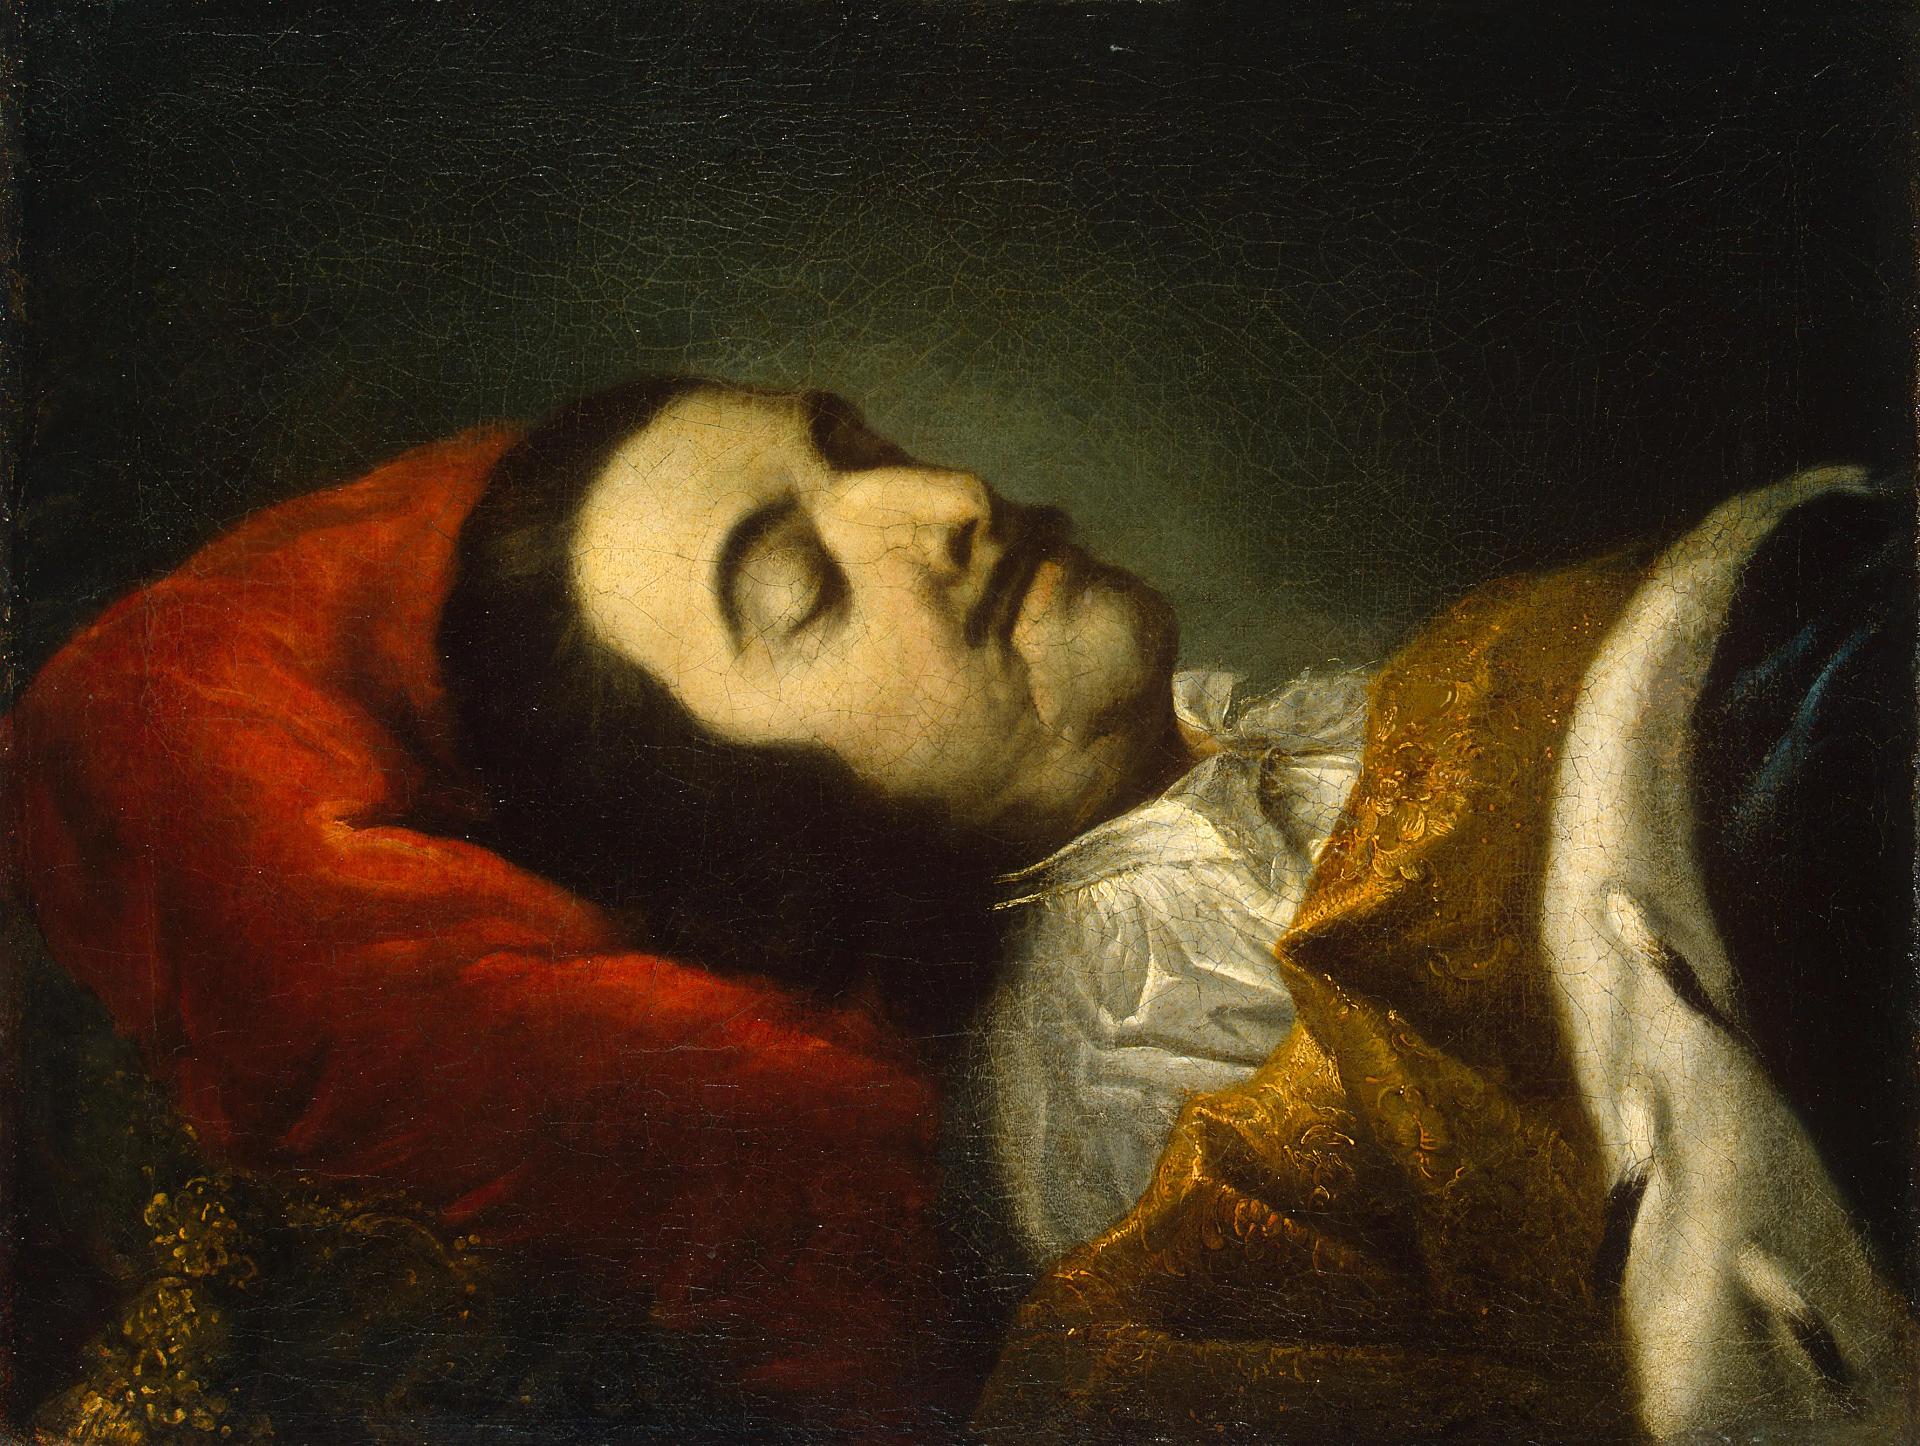 Иоганн Готфрид Таннауэр. "Портрет Петра I на смертном одре". 1725. Эрмитаж, Санкт-Петербург.